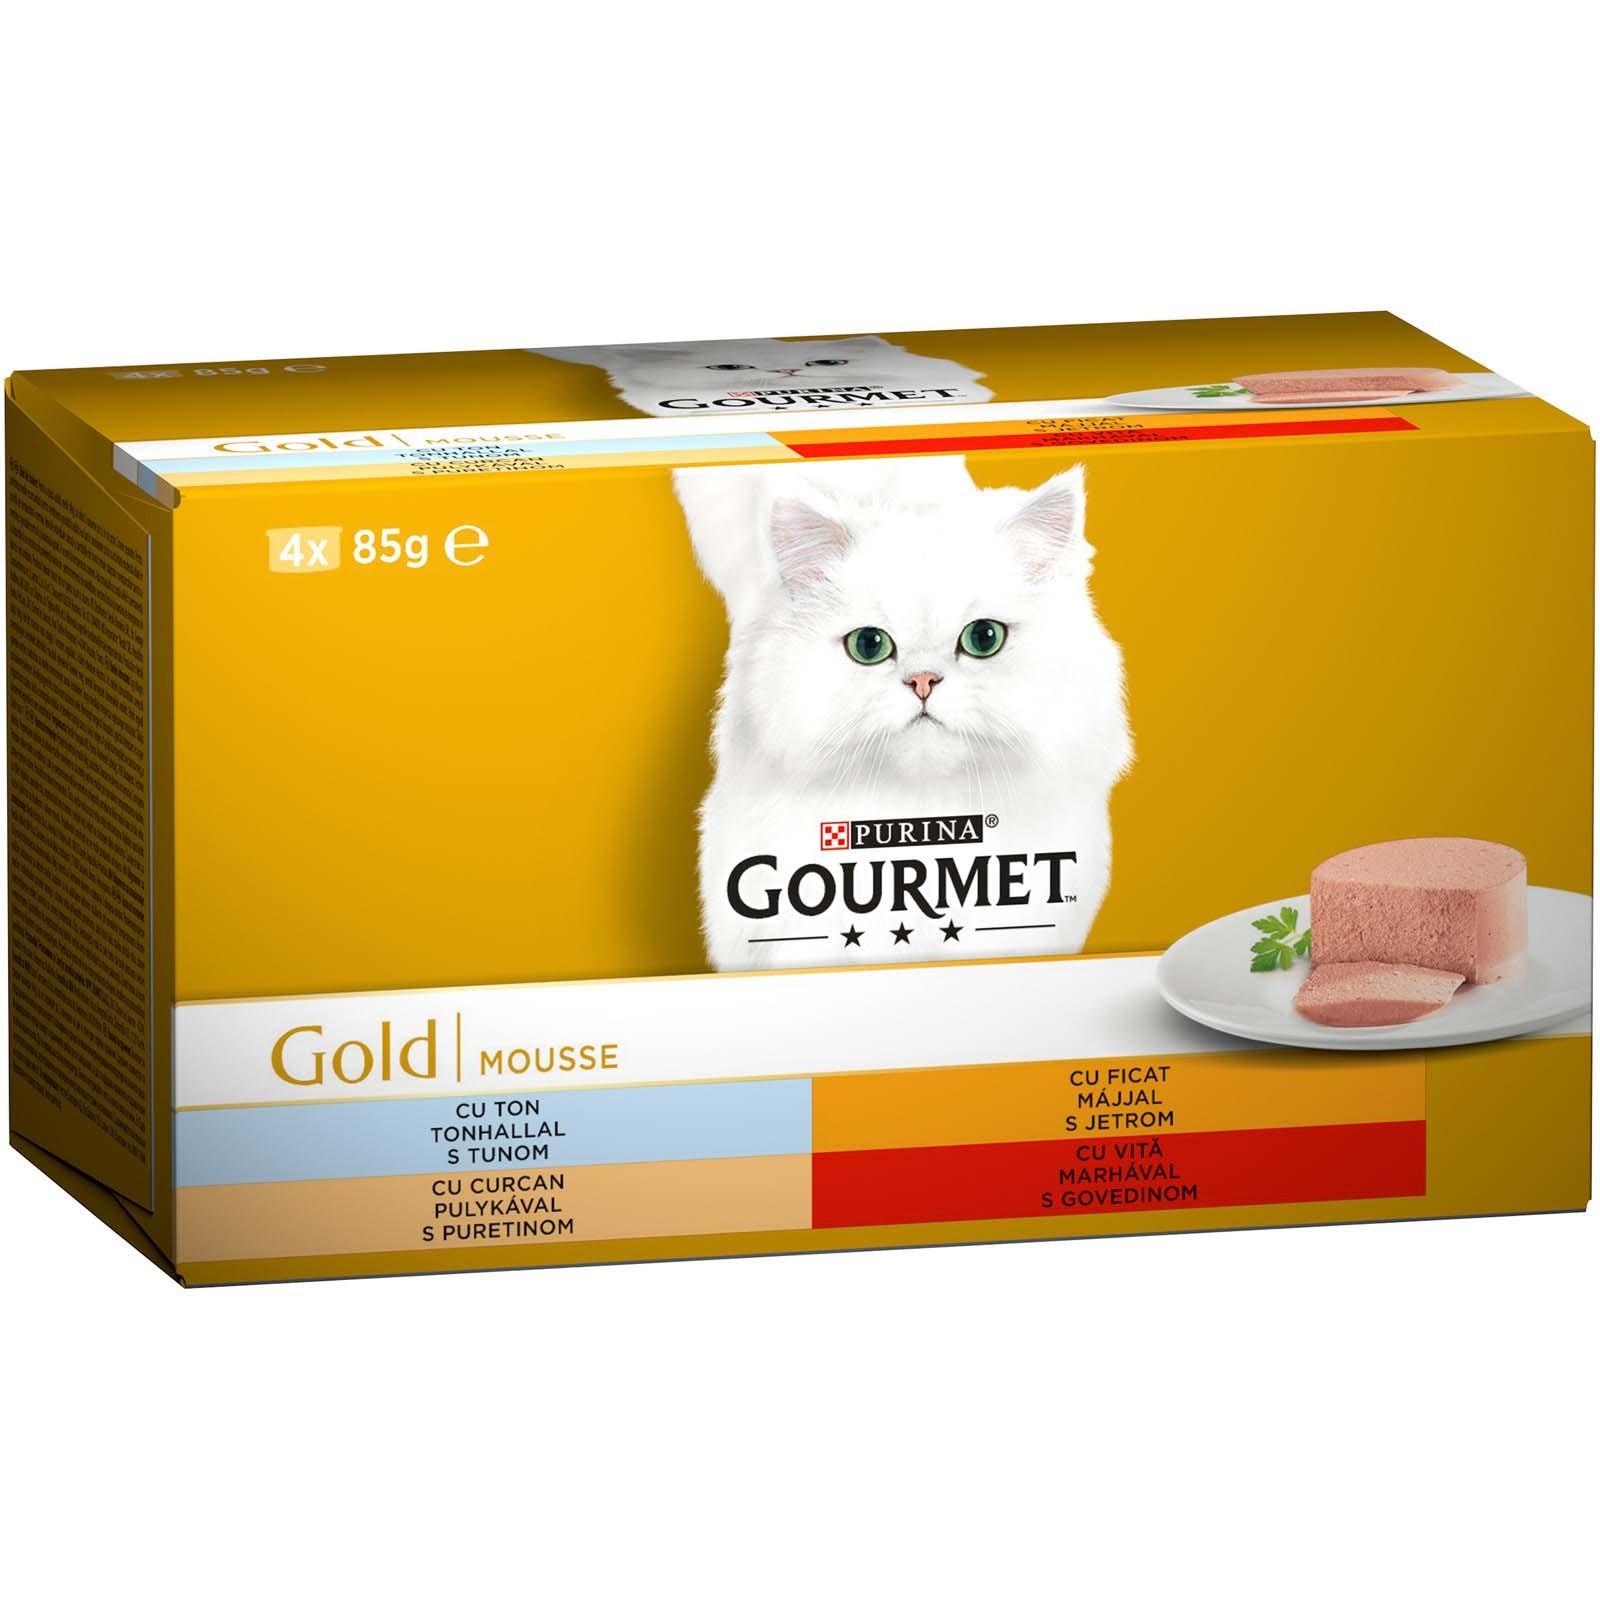 PURINA Gourmet Gold Pašteta za mačke 4/1 85 g